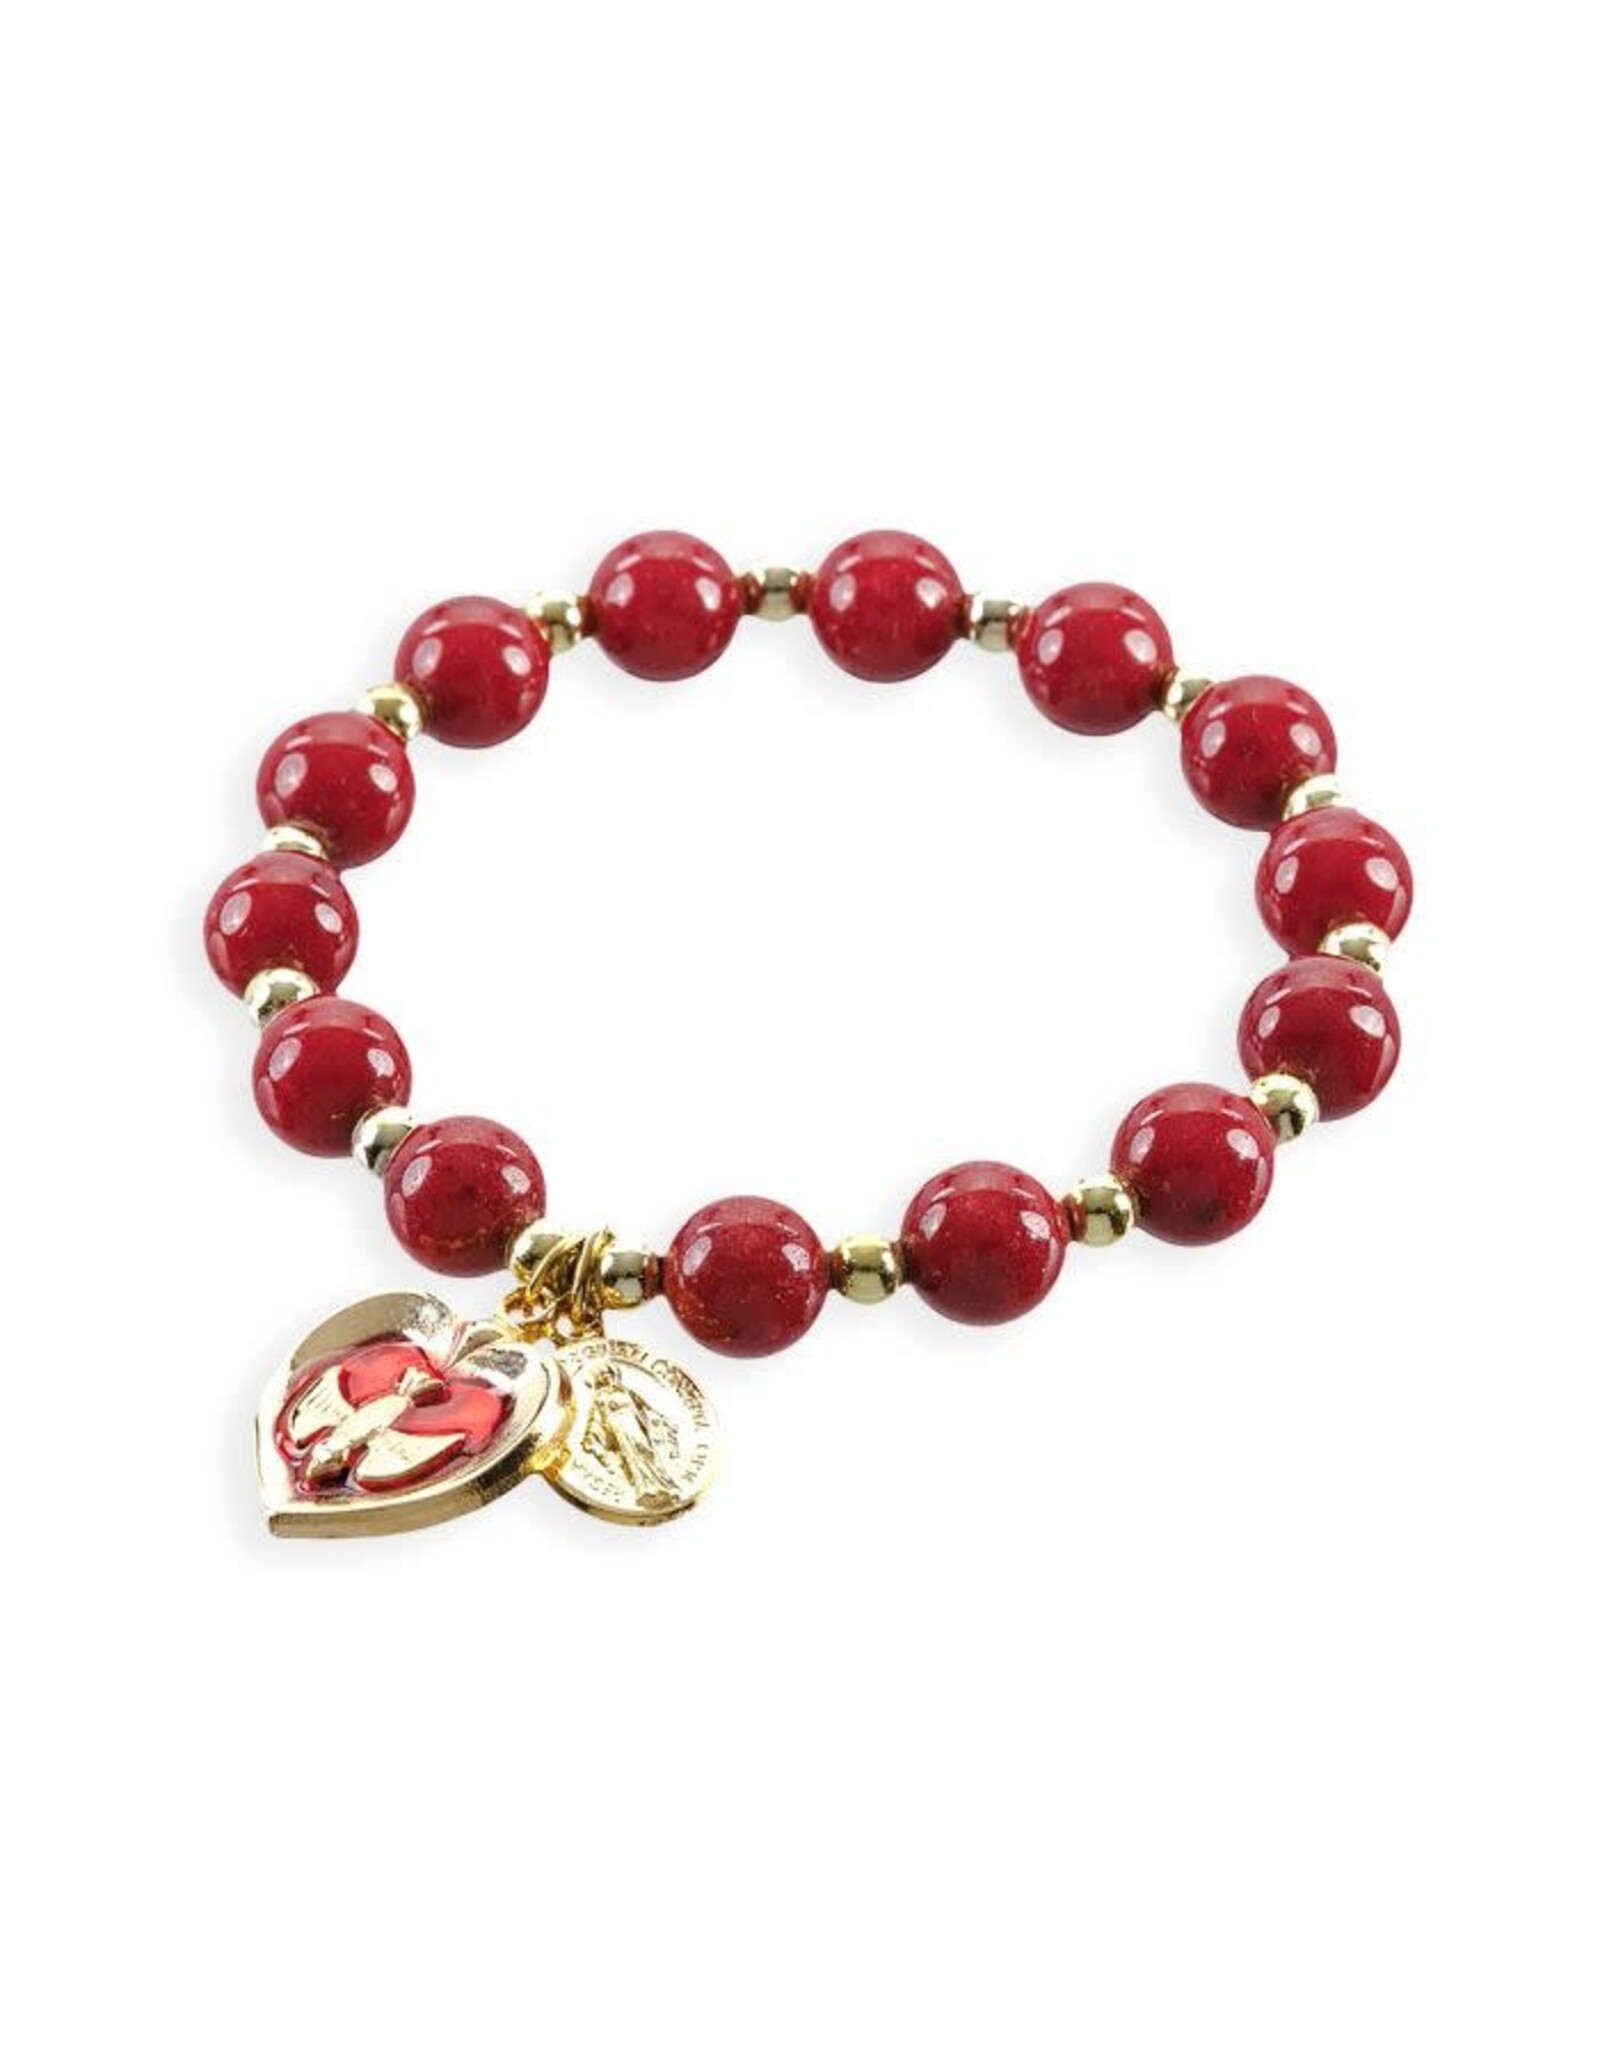 Hirten Confirmation Bracelet - Garnet Beads